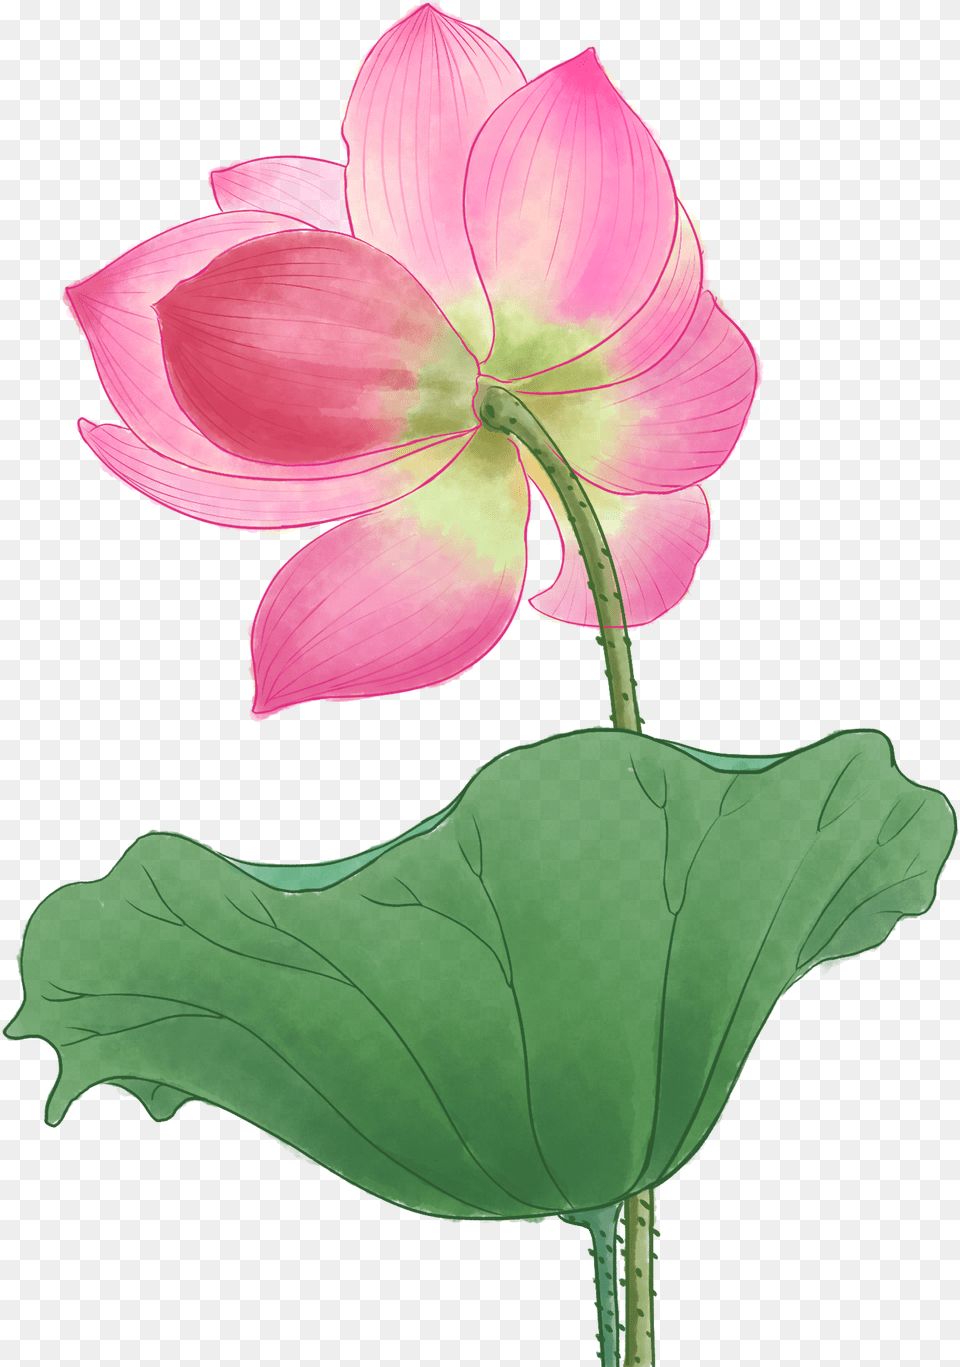 Lily, Flower, Geranium, Leaf, Petal Png Image